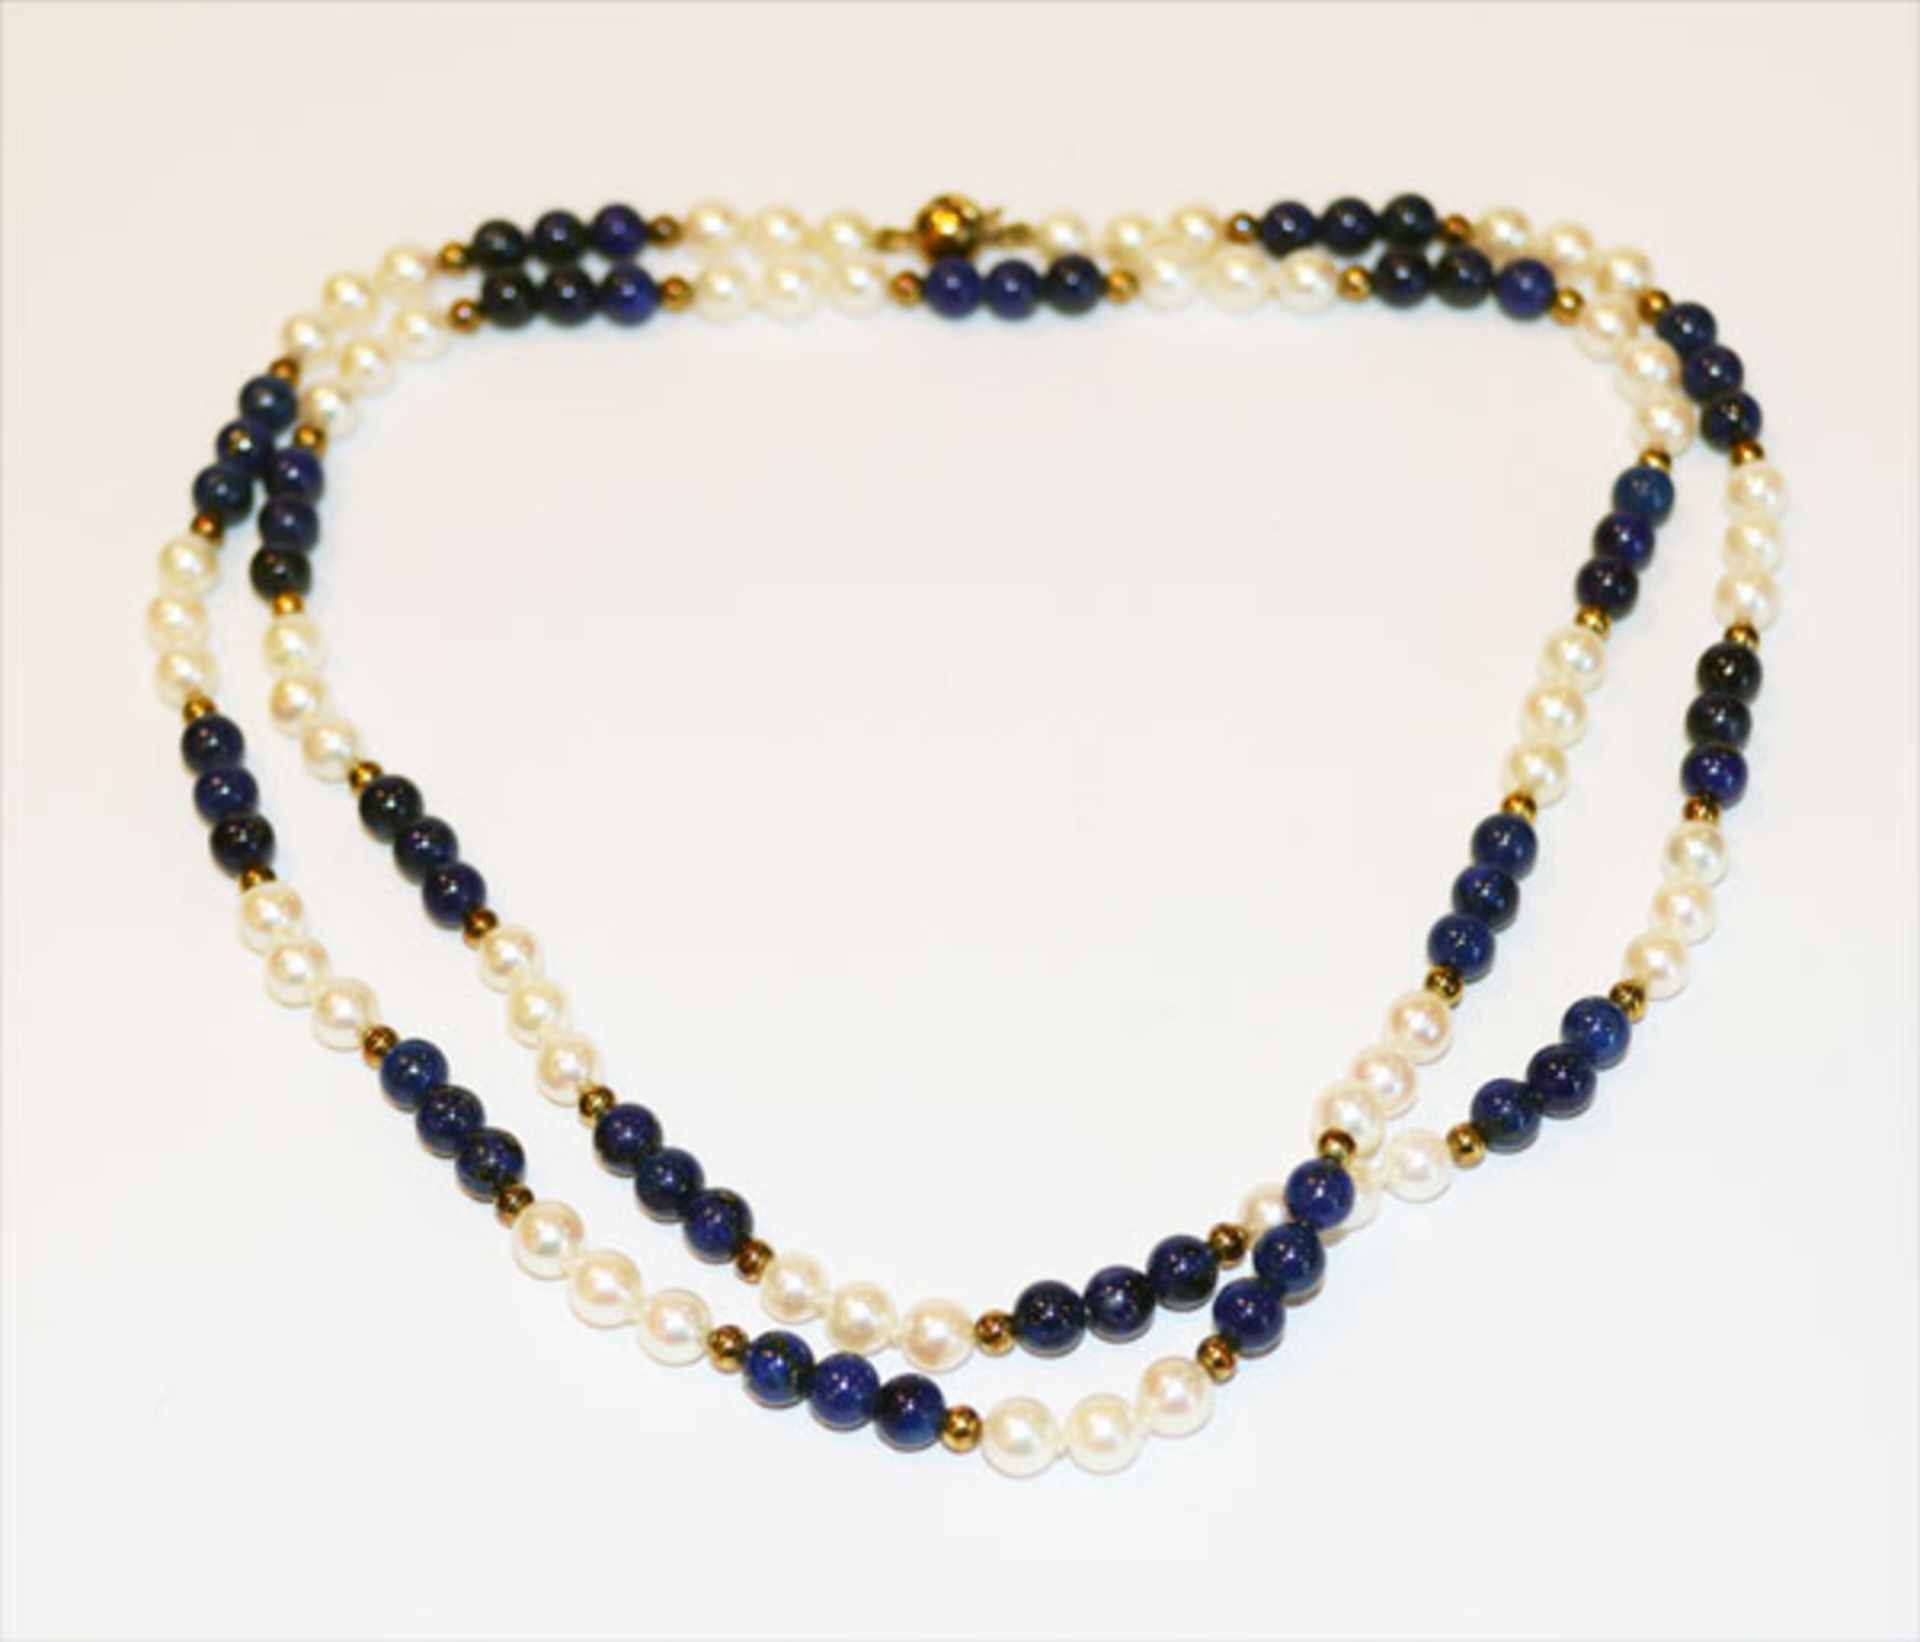 Perlen/Lapislazuli Kugelkette mit 14 k Gelbgold Schließe und Zwischenkugeln, L 70 cm